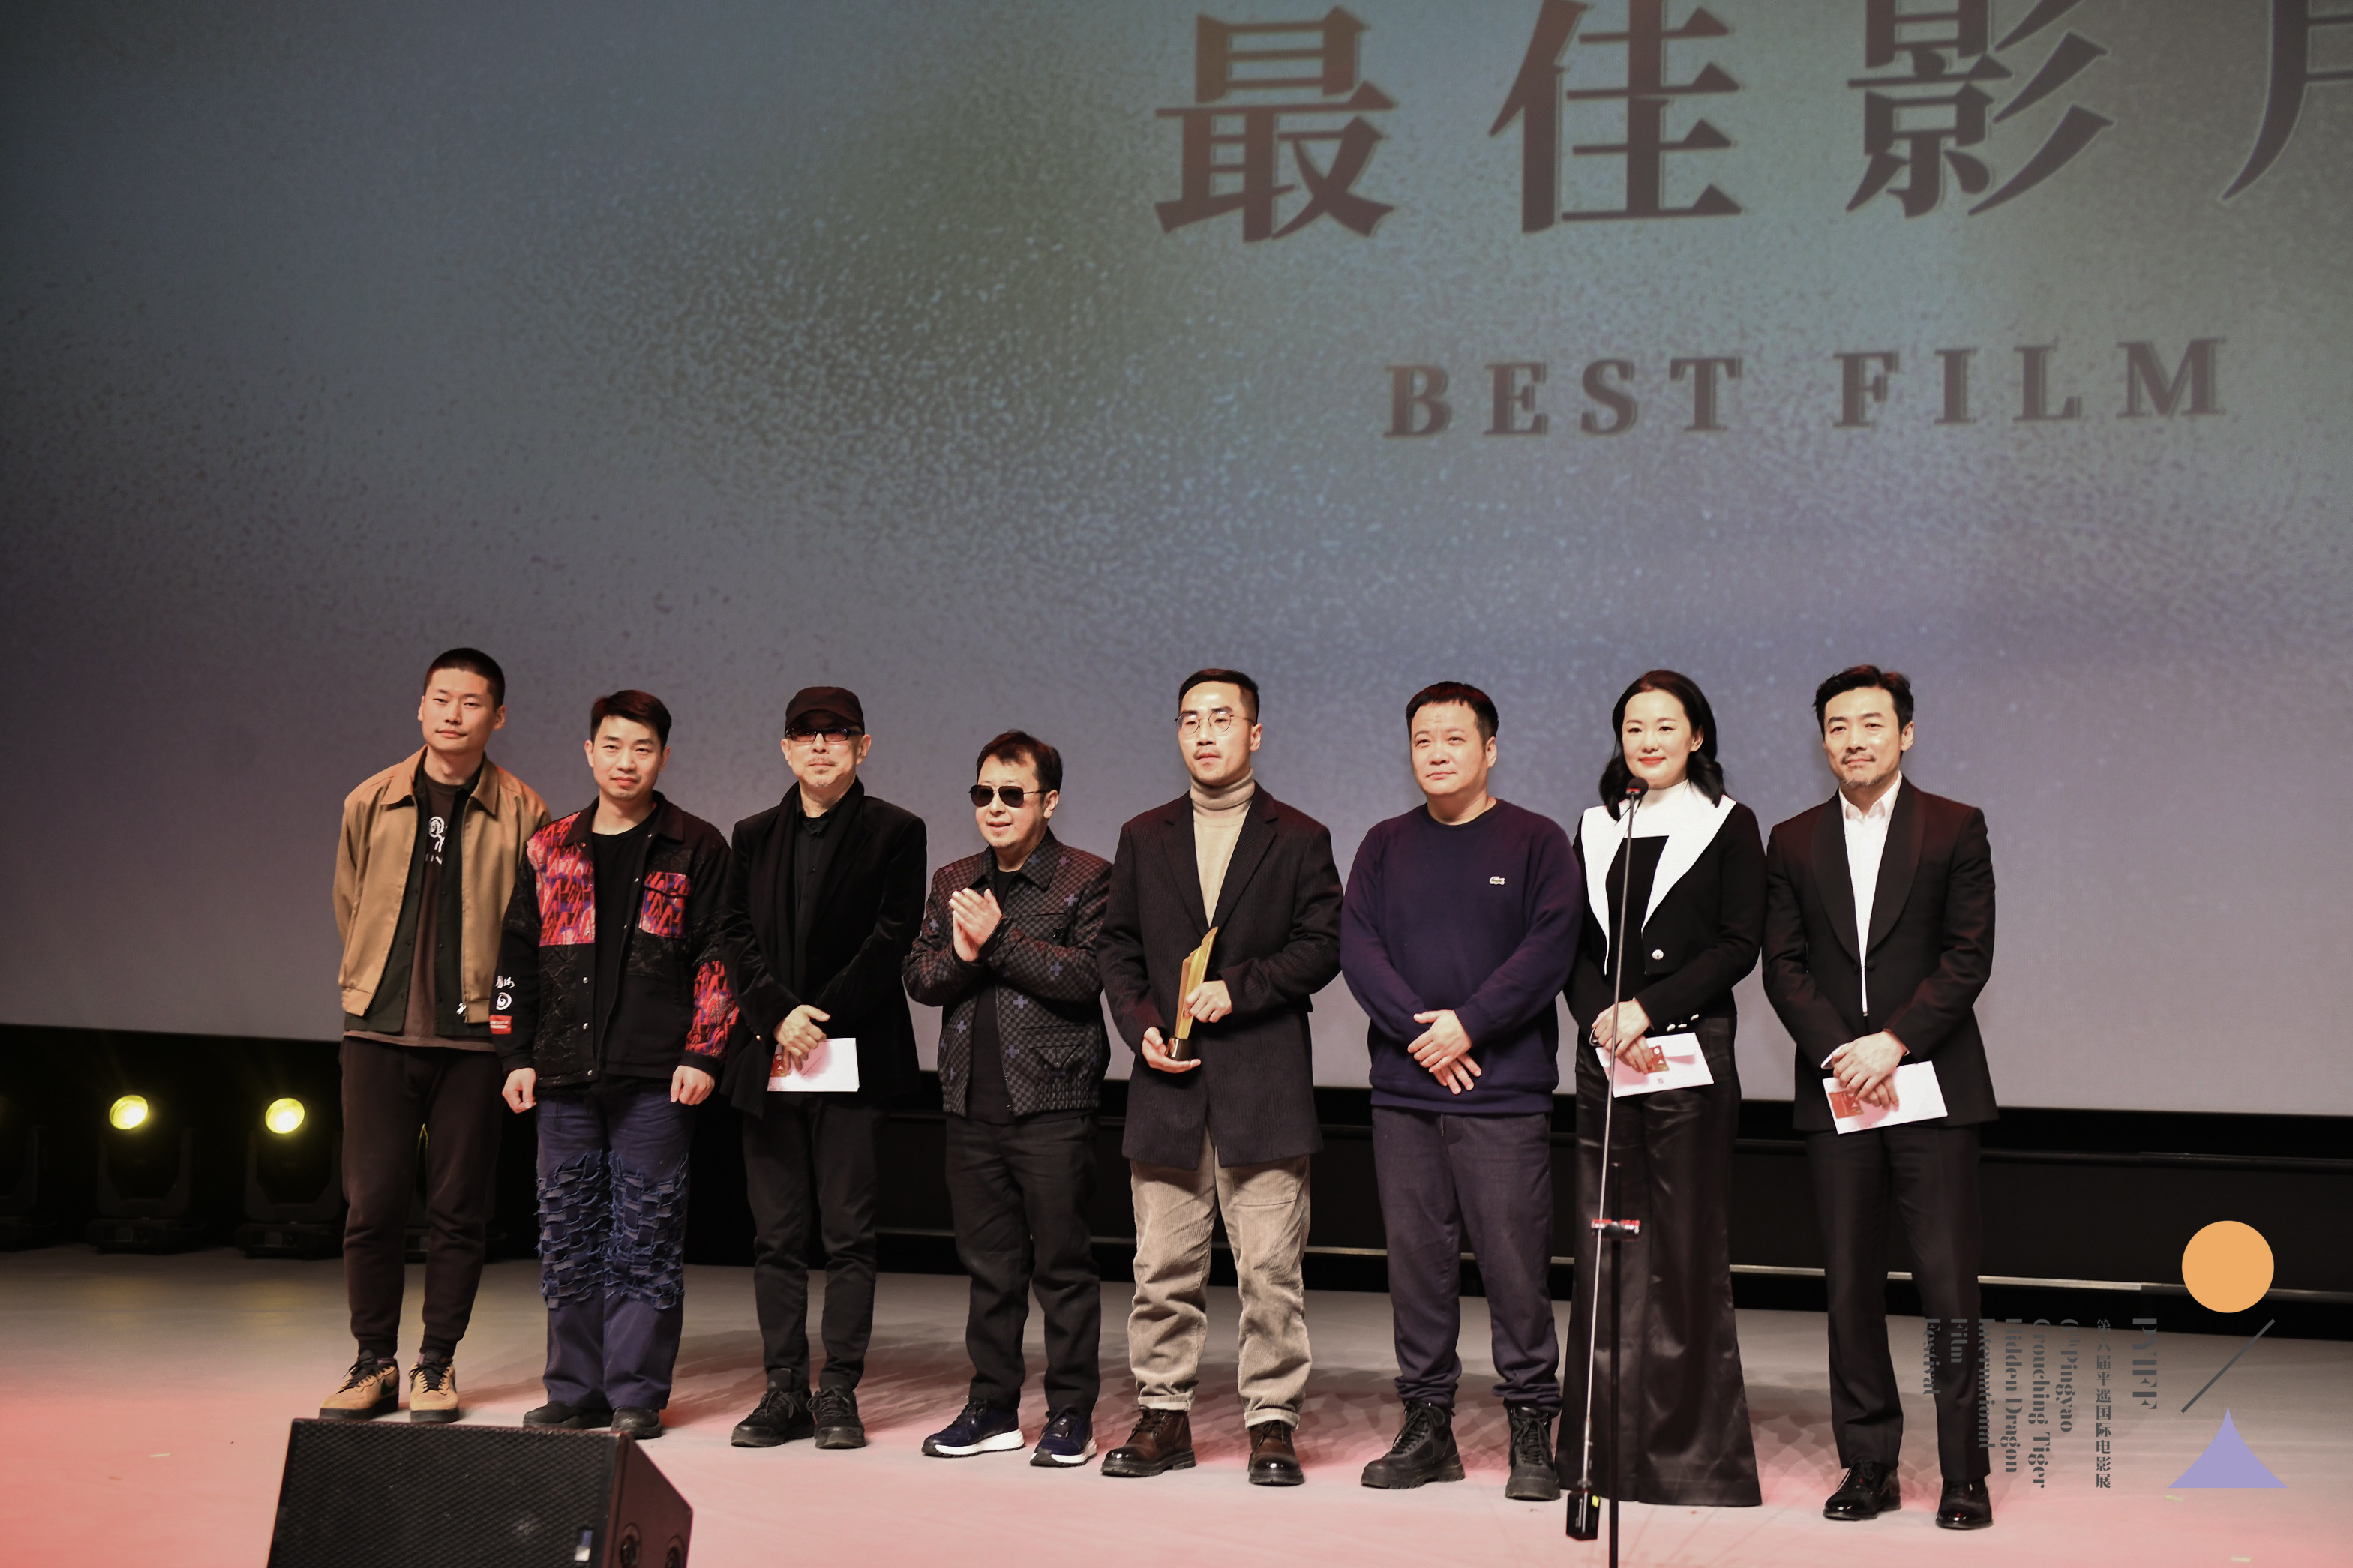 平遥国际电影展荣誉揭晓 《温柔壳》获三项荣誉